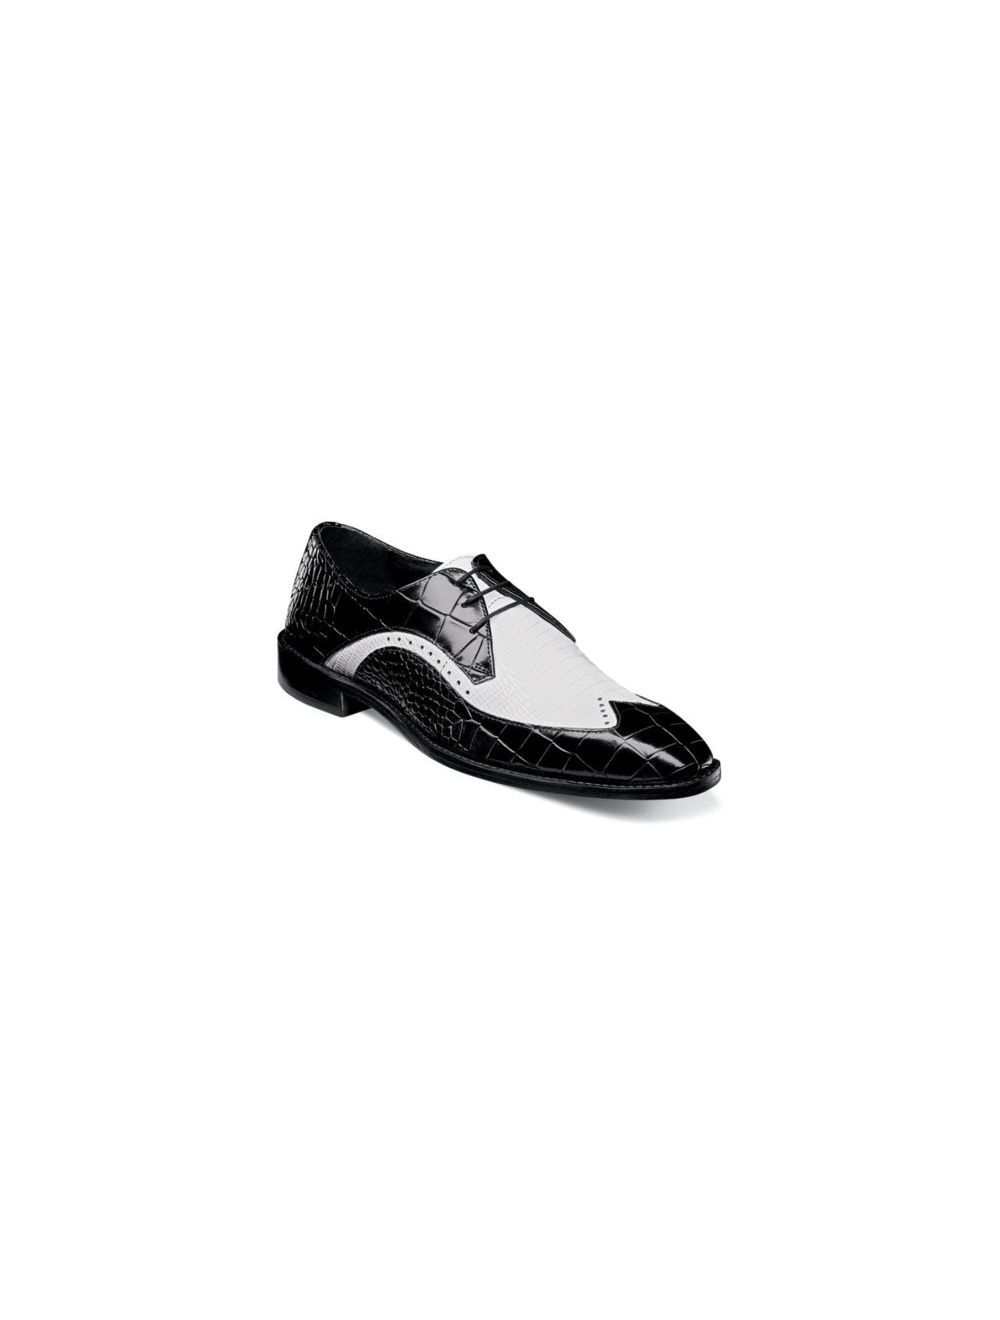 black oxford white sole